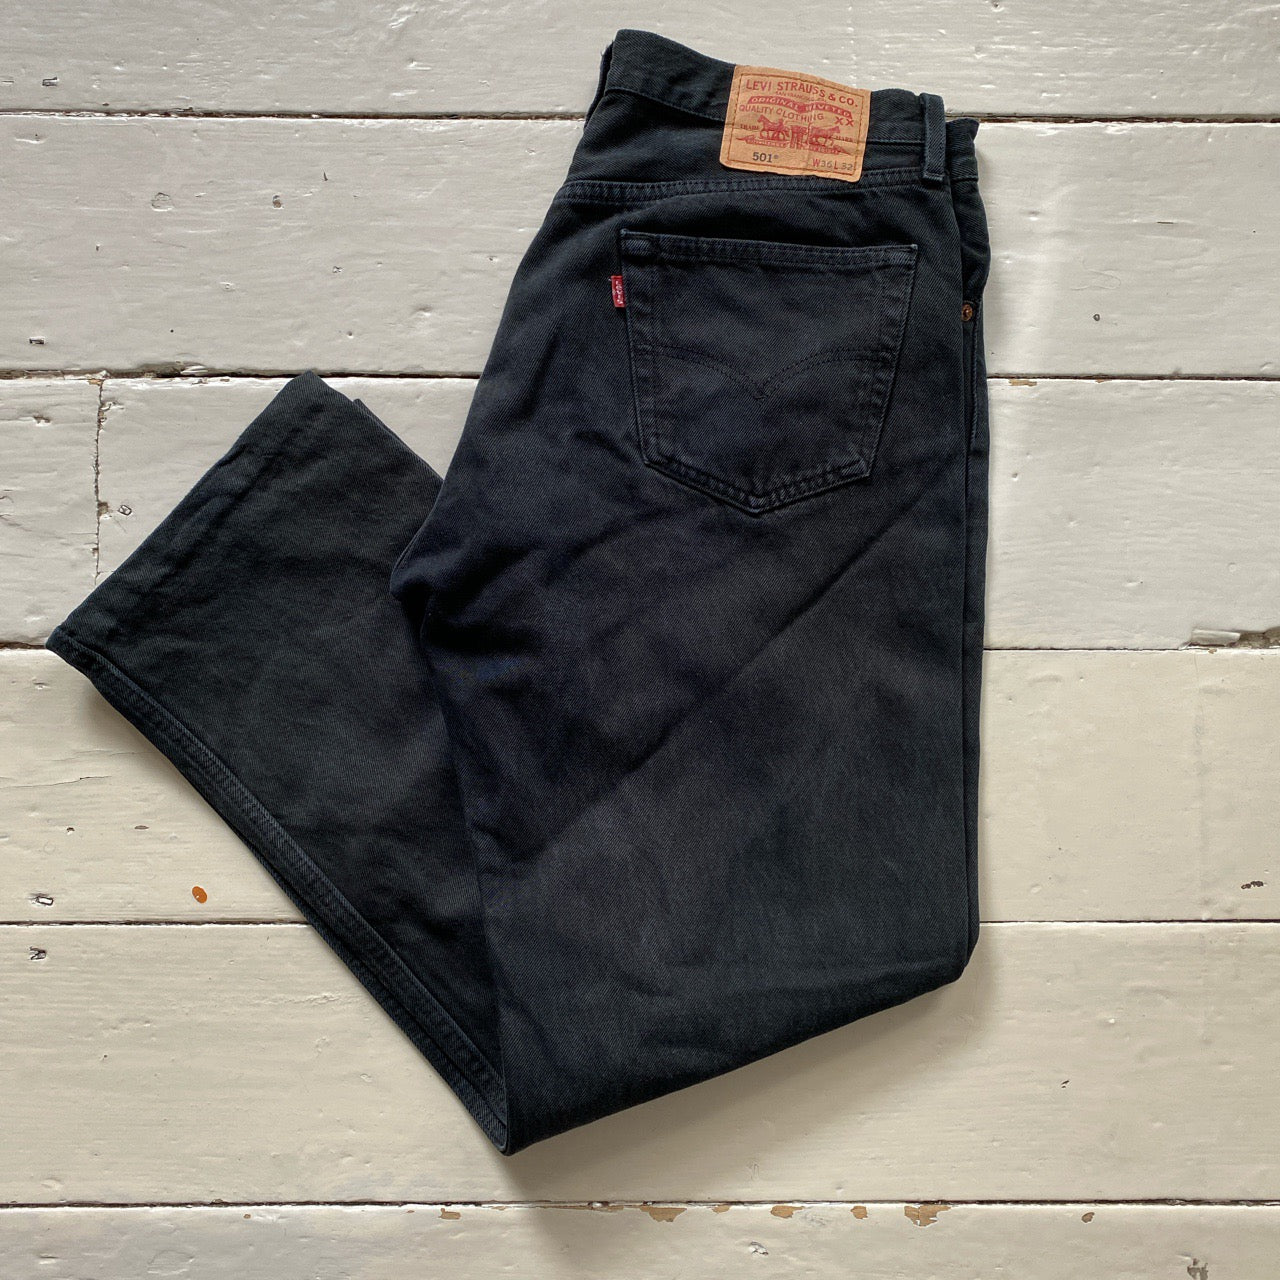 Levis 501 Black Jeans (36/29)